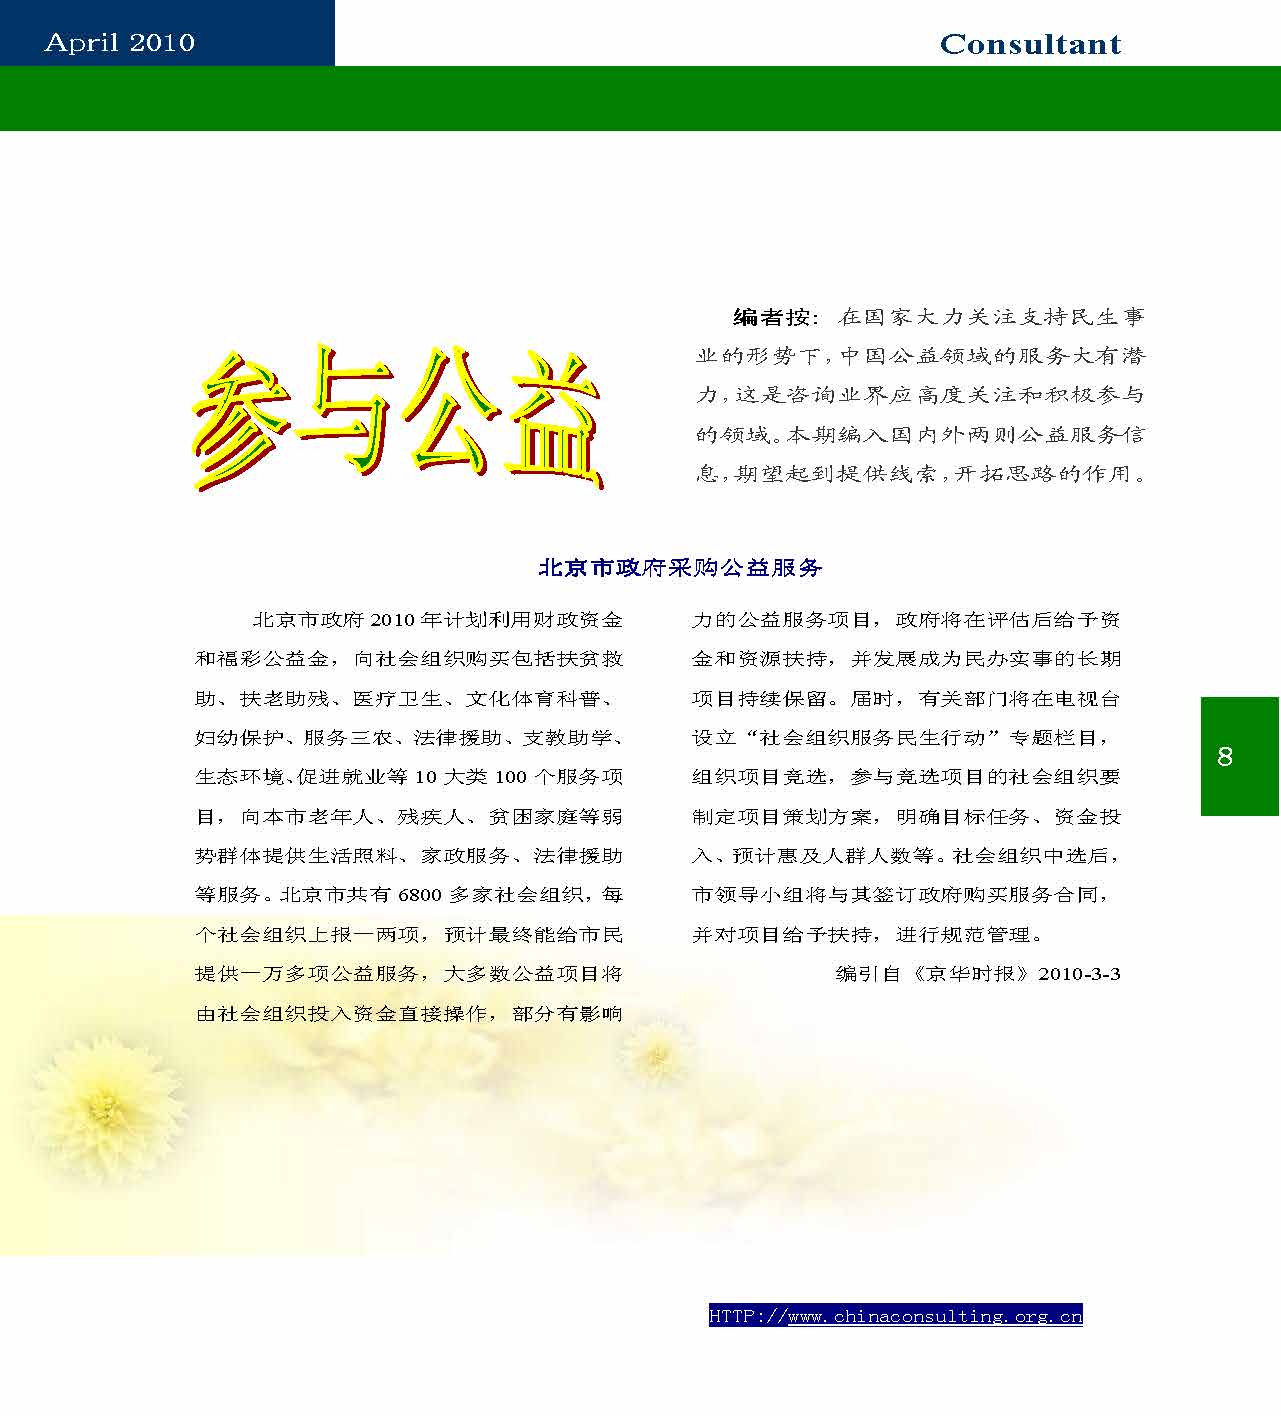 9中国科技咨询协会第九期会刊_页面_10.jpg